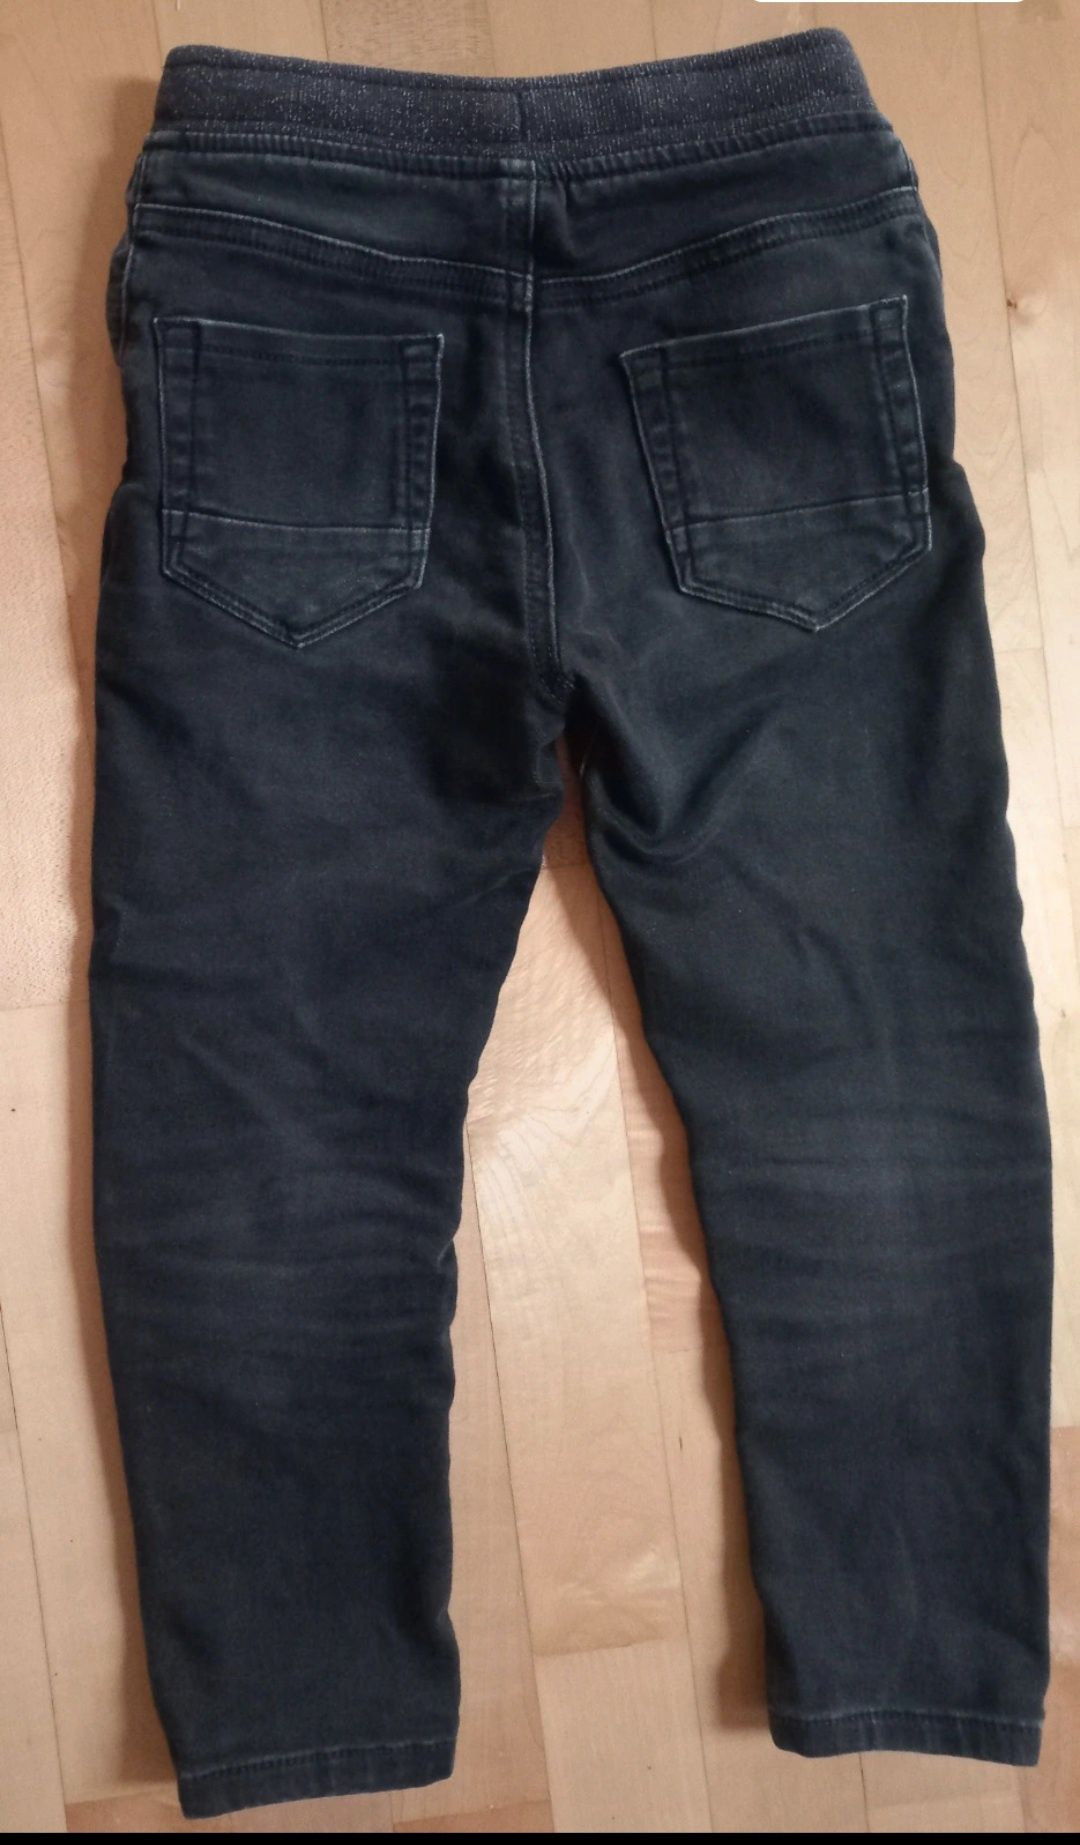 TU spodnie jeansy joggersy grafitowe 3-4 lata 98-104cm